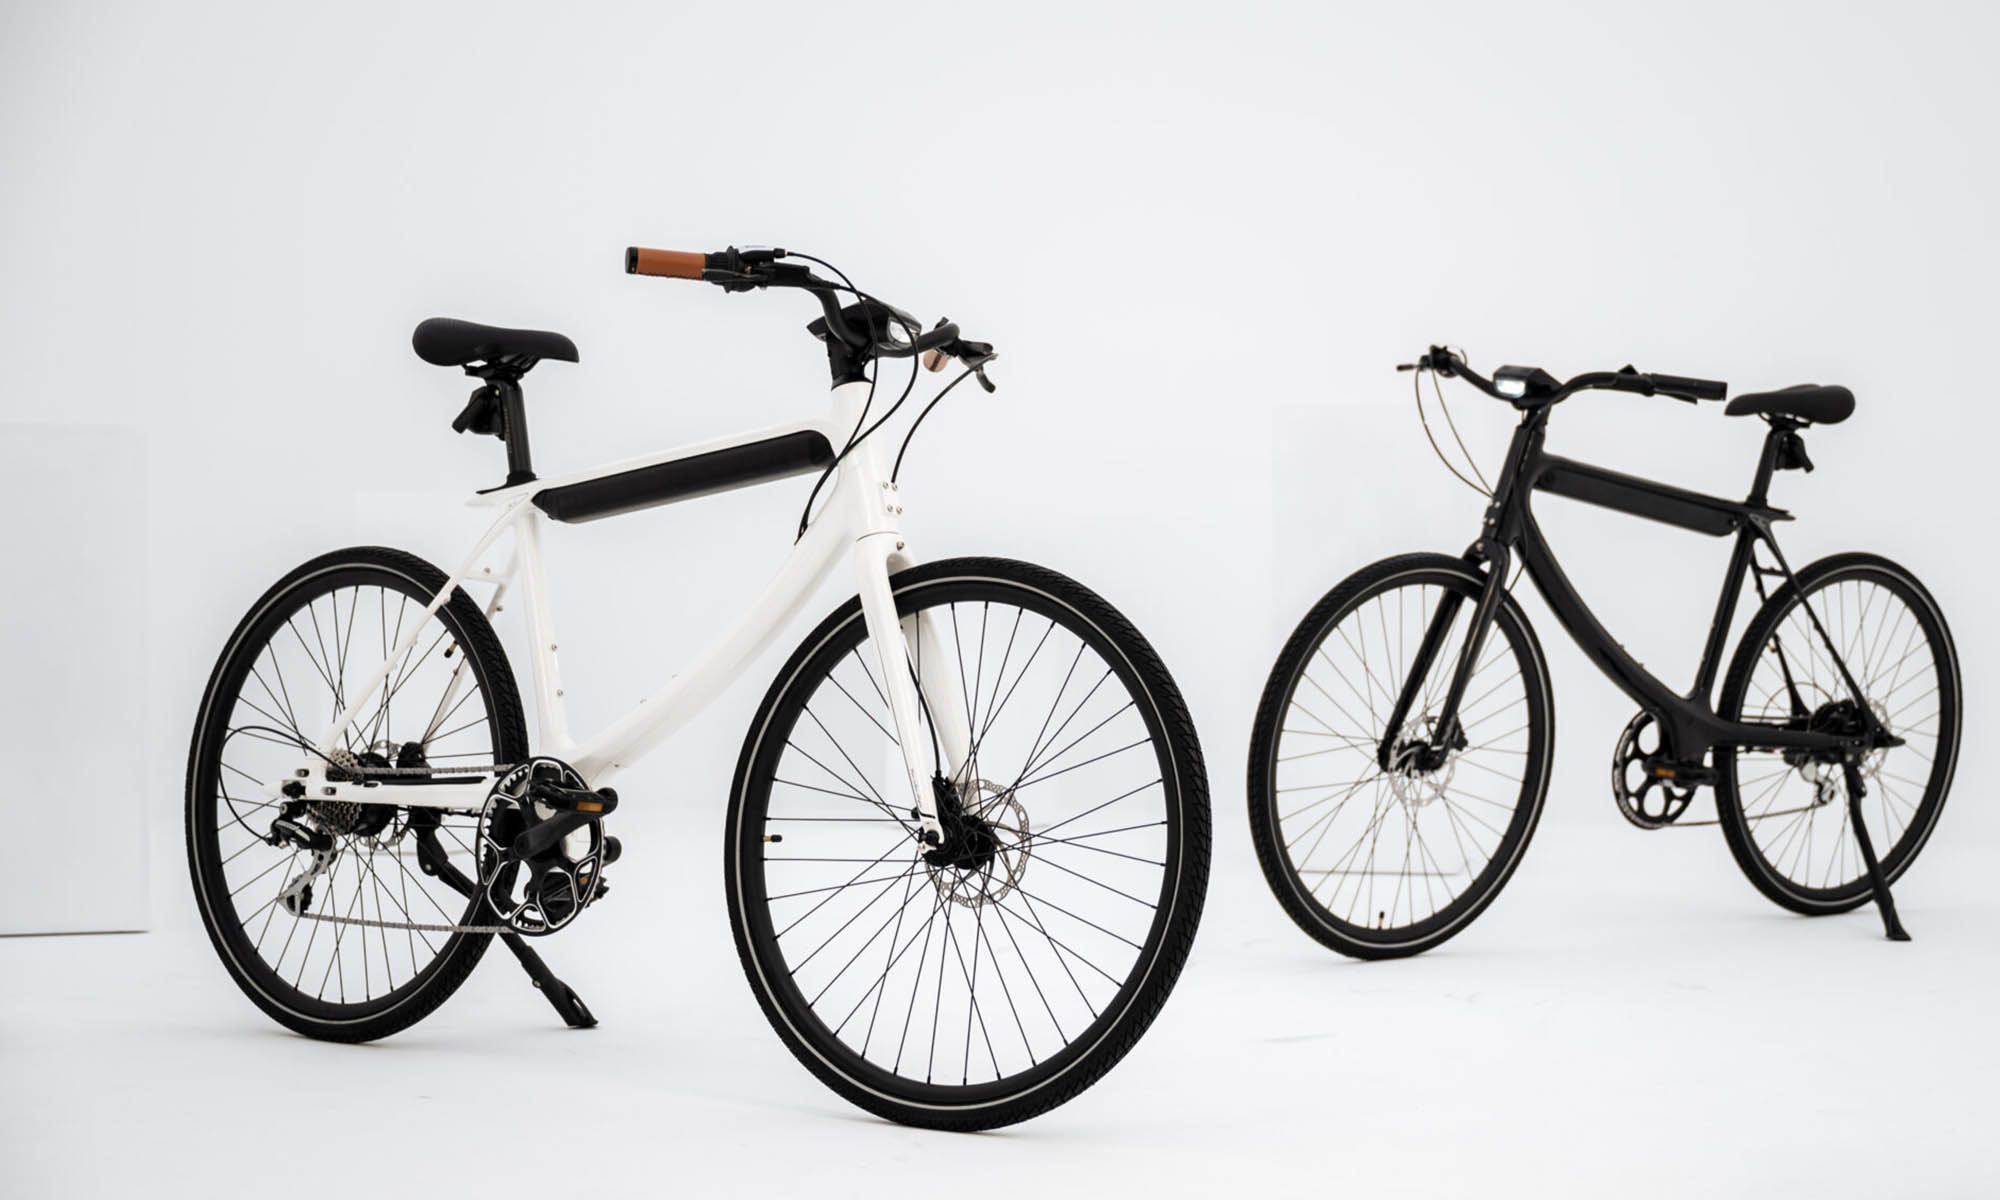 Urtopia se basa en el diseño diferencial y en la alta tecnología para atraer a los ciclistas.